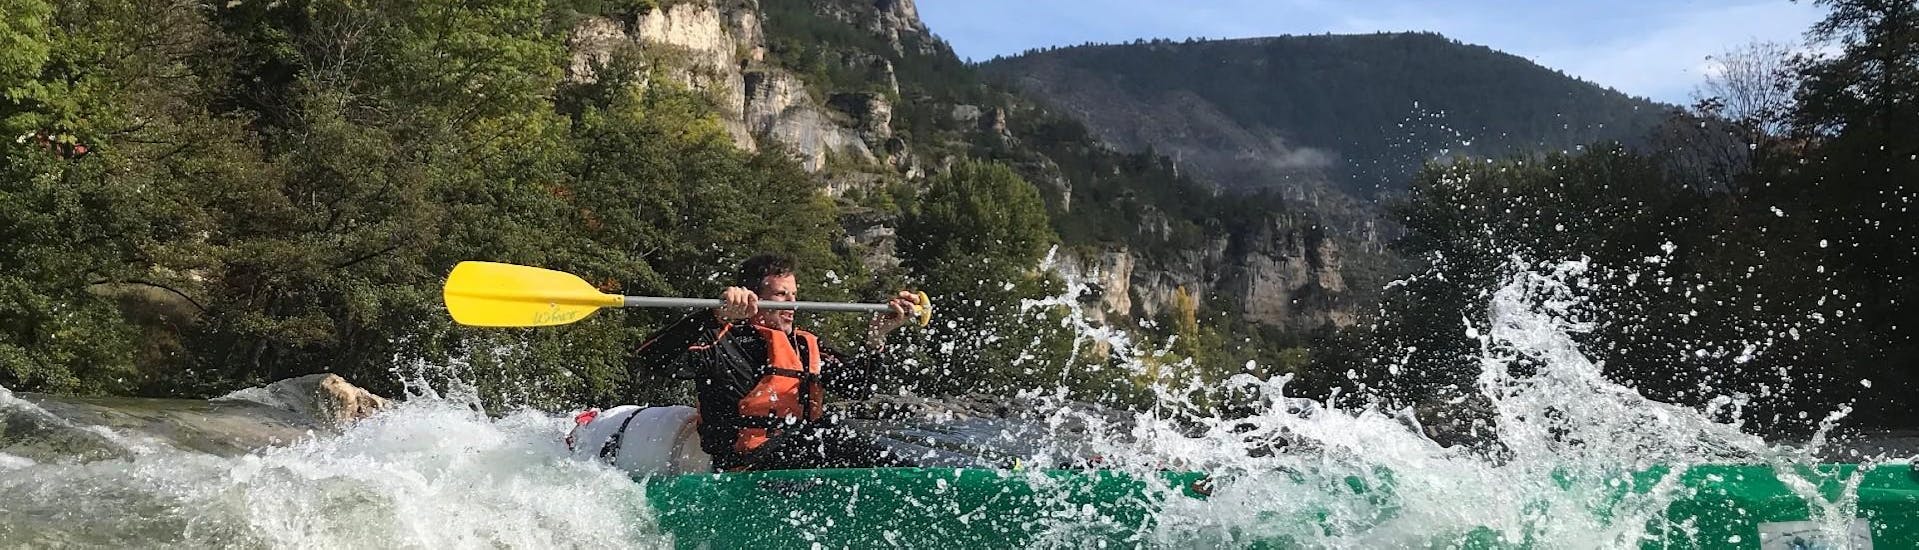 Een man peddelt actief in het hart van de Gorges tijdens de sportieve tocht van 20 km Kano verhuur op de Tarn met Kano La Cazelle Gorges du Tarn.